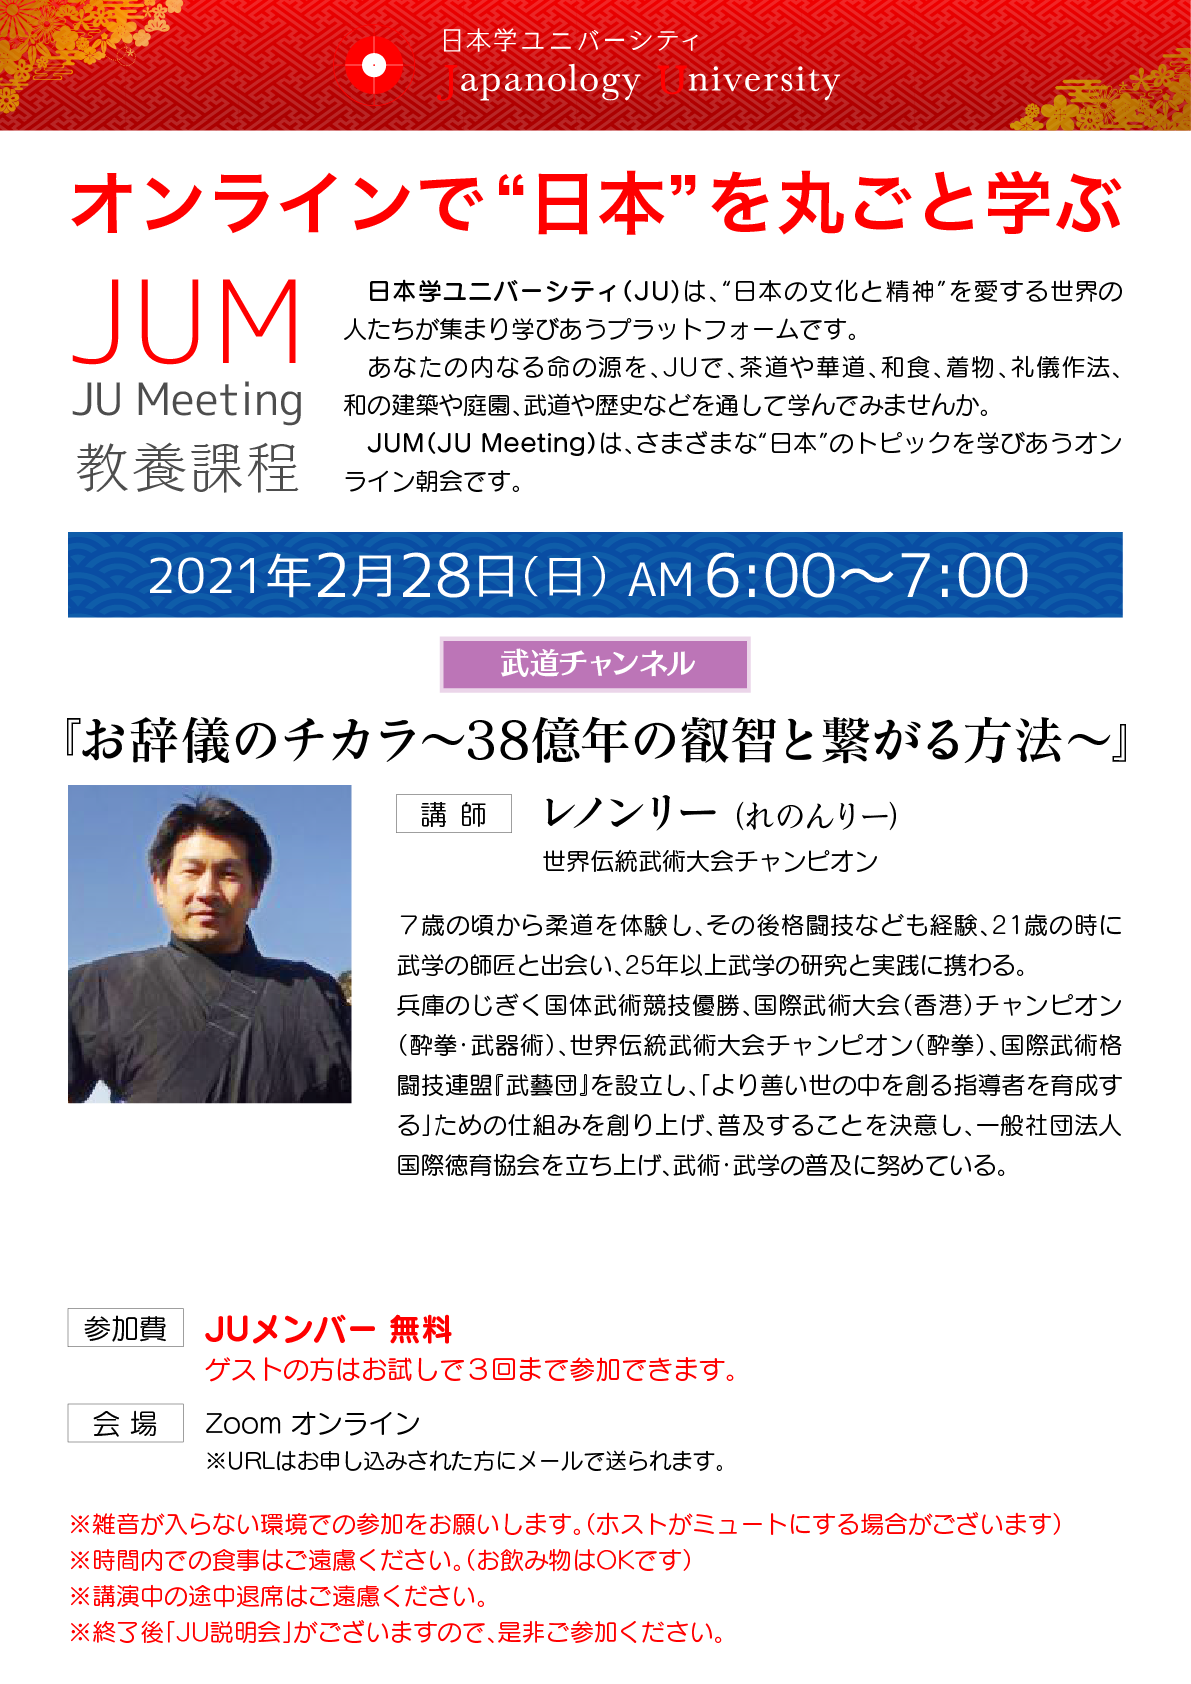 0228 Jum お辞儀のチカラ 38億年の叡智と繋がる方法 日本学ユニバーシティ Ju